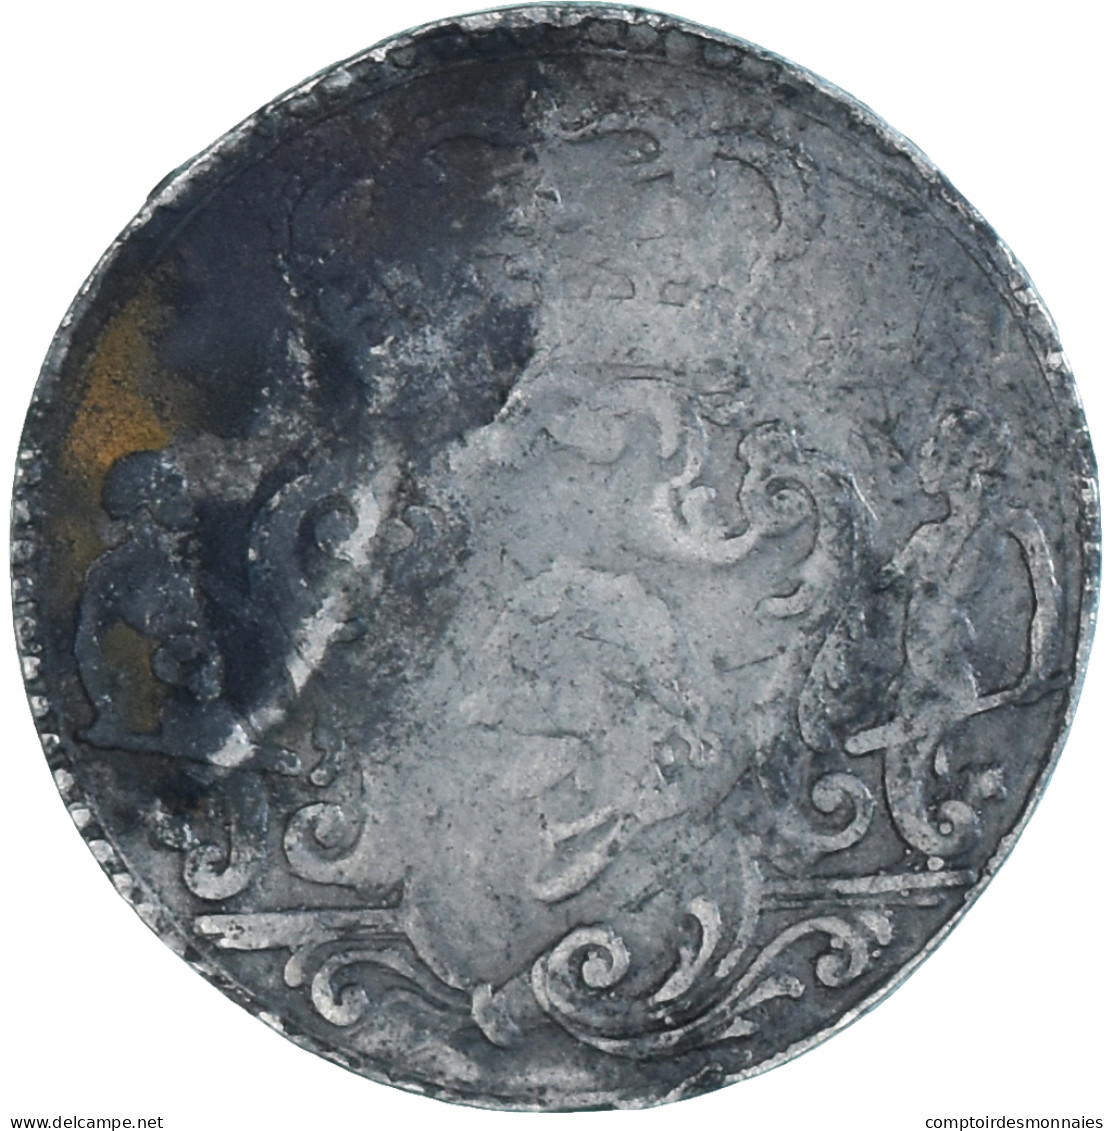 Monnaie, États Italiens, CORSICA, General Pasquale Paoli, 10 Soldi, 1764 - Corse (1736-1768)